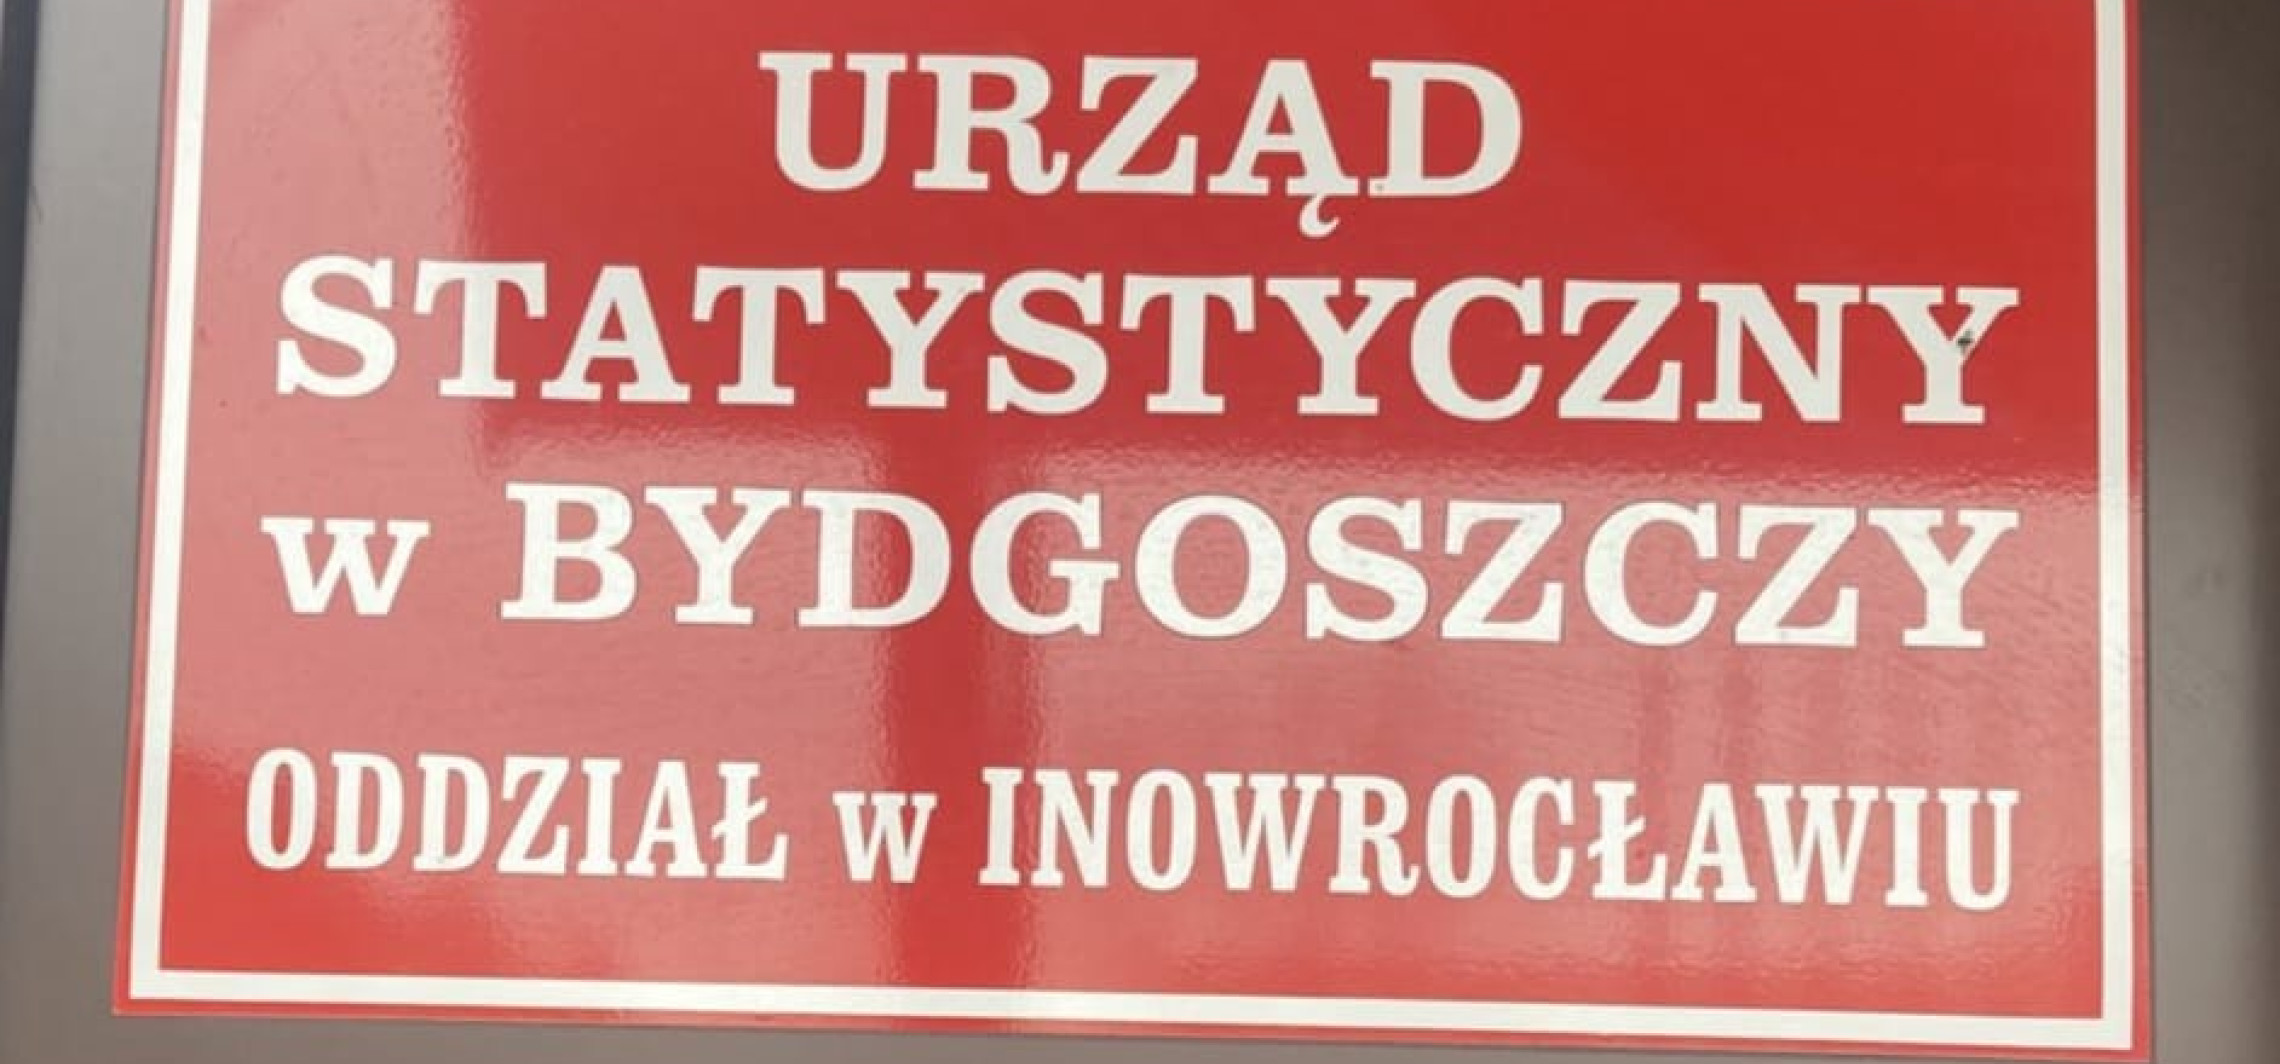 Inowrocław - Oddział urzędu statystycznego do likwidacji? Plany uległy zmianie 